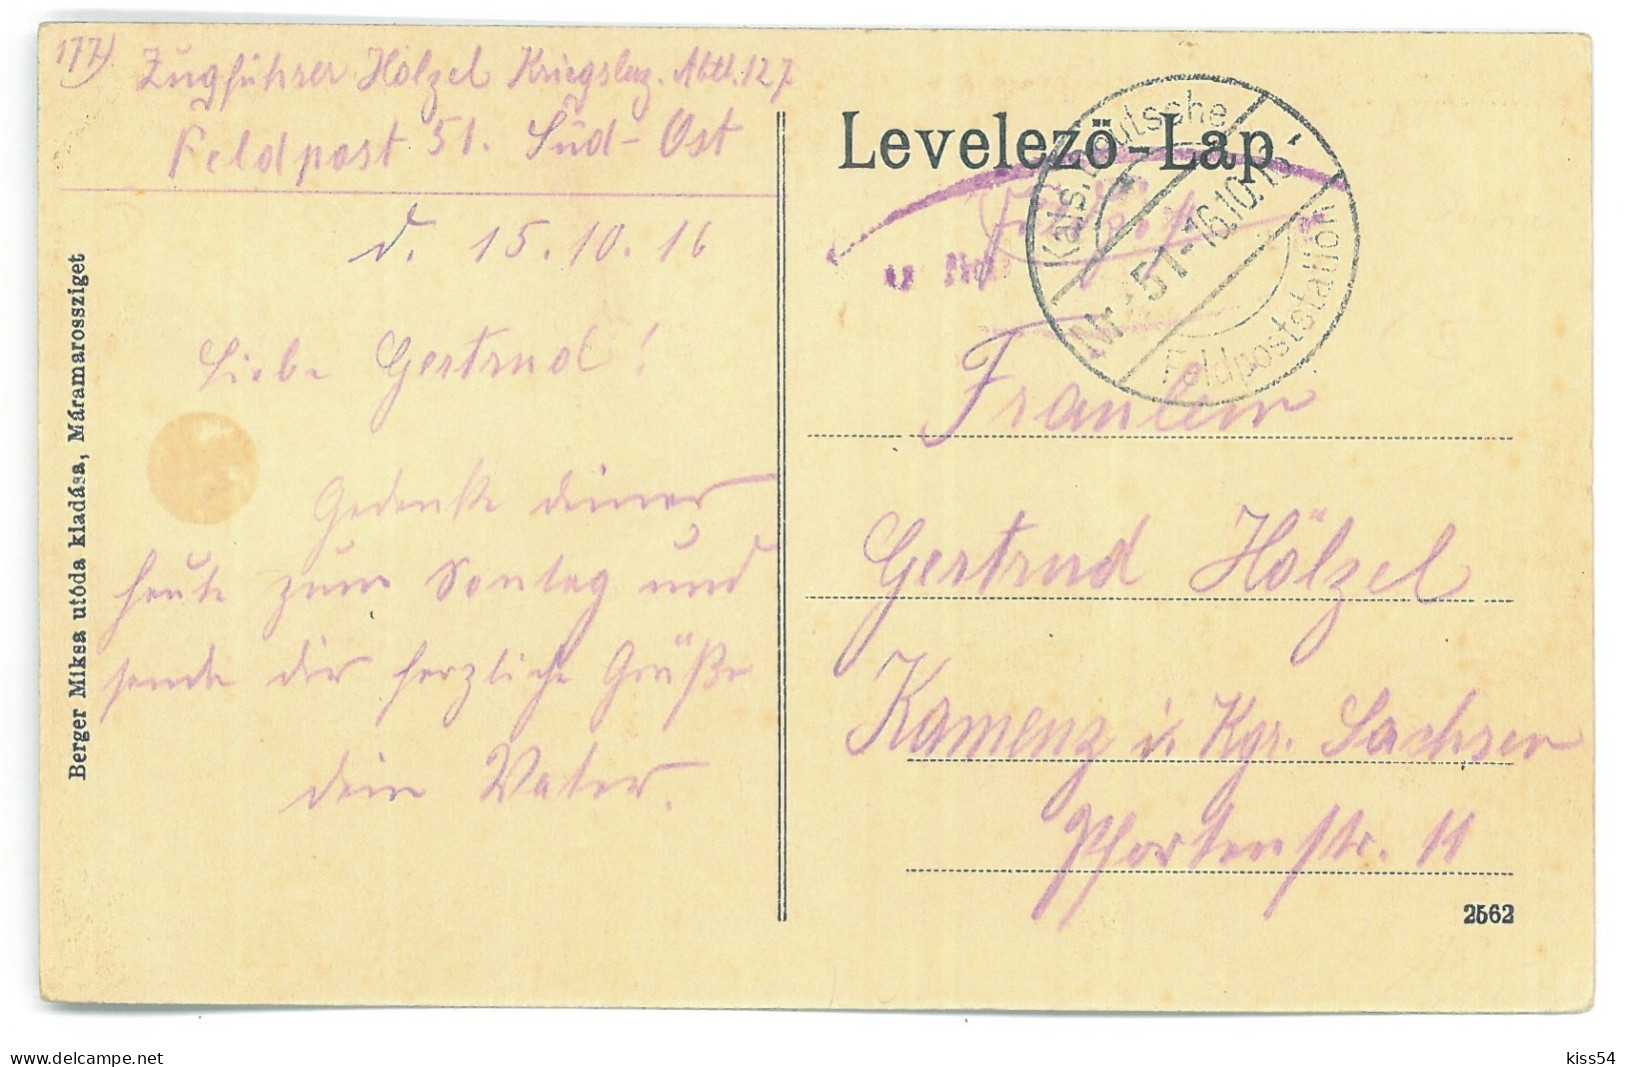 RO 09 - 25143 OCNA SUGATAG, Maramures, Market, Romania - Old Postcard, CENSOR - Used - 1916 - Rumania